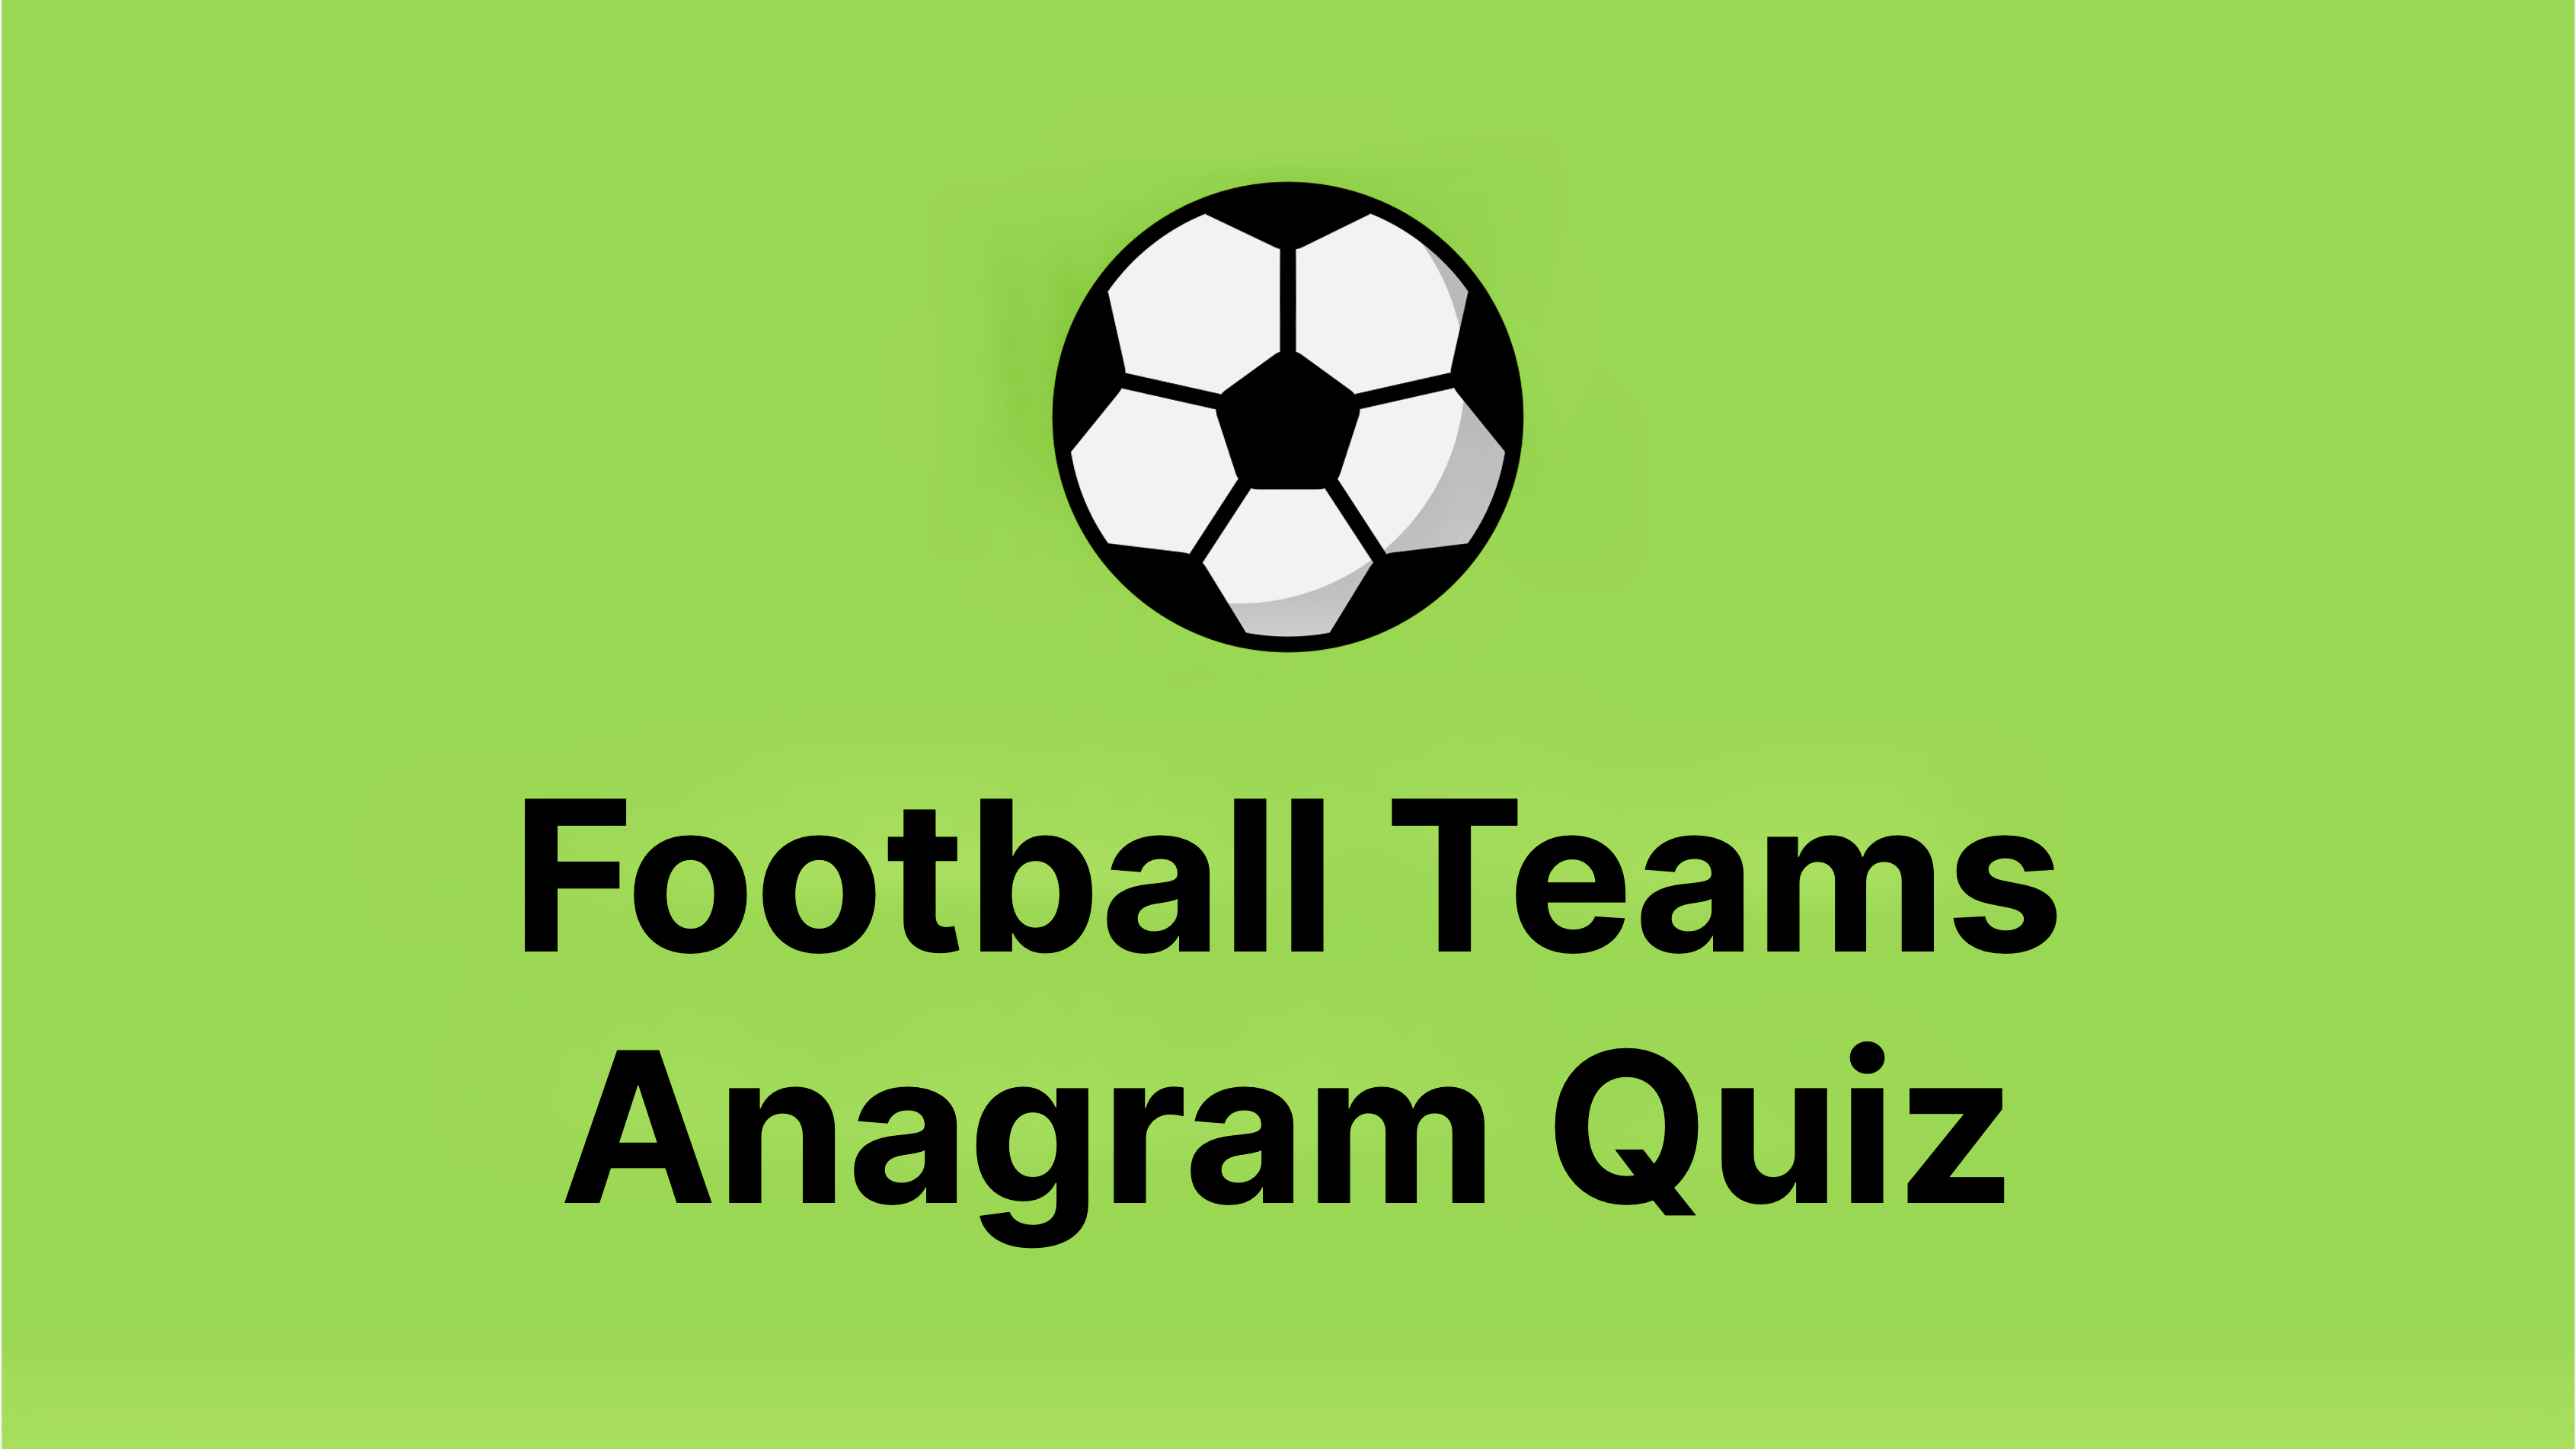 Football Teams Anagram Quiz